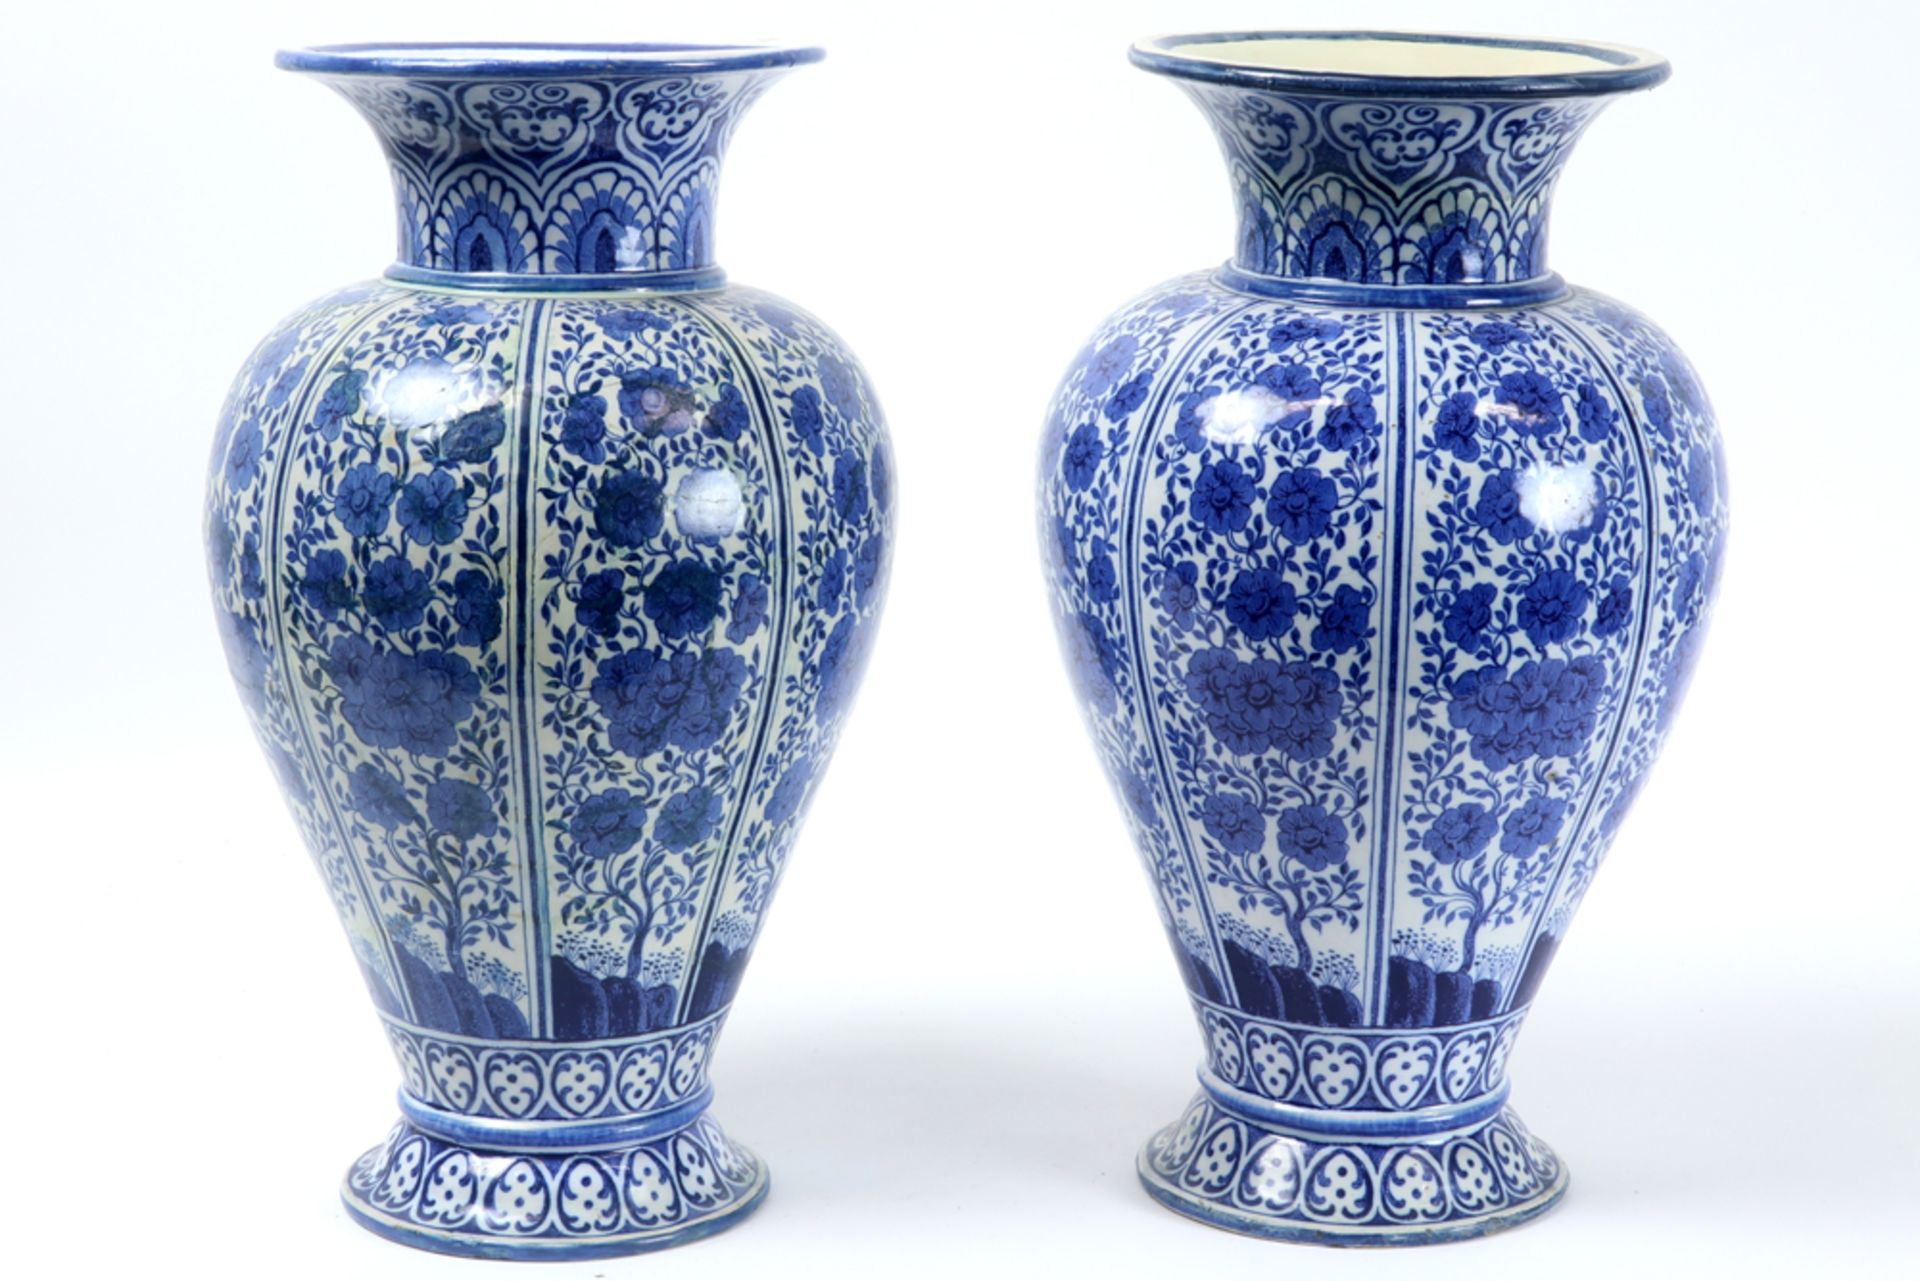 pair of antique vases in ceramic with a blue-white decor - signed C.L. Waegeneer || C.L WAEGENEER - Bild 2 aus 4